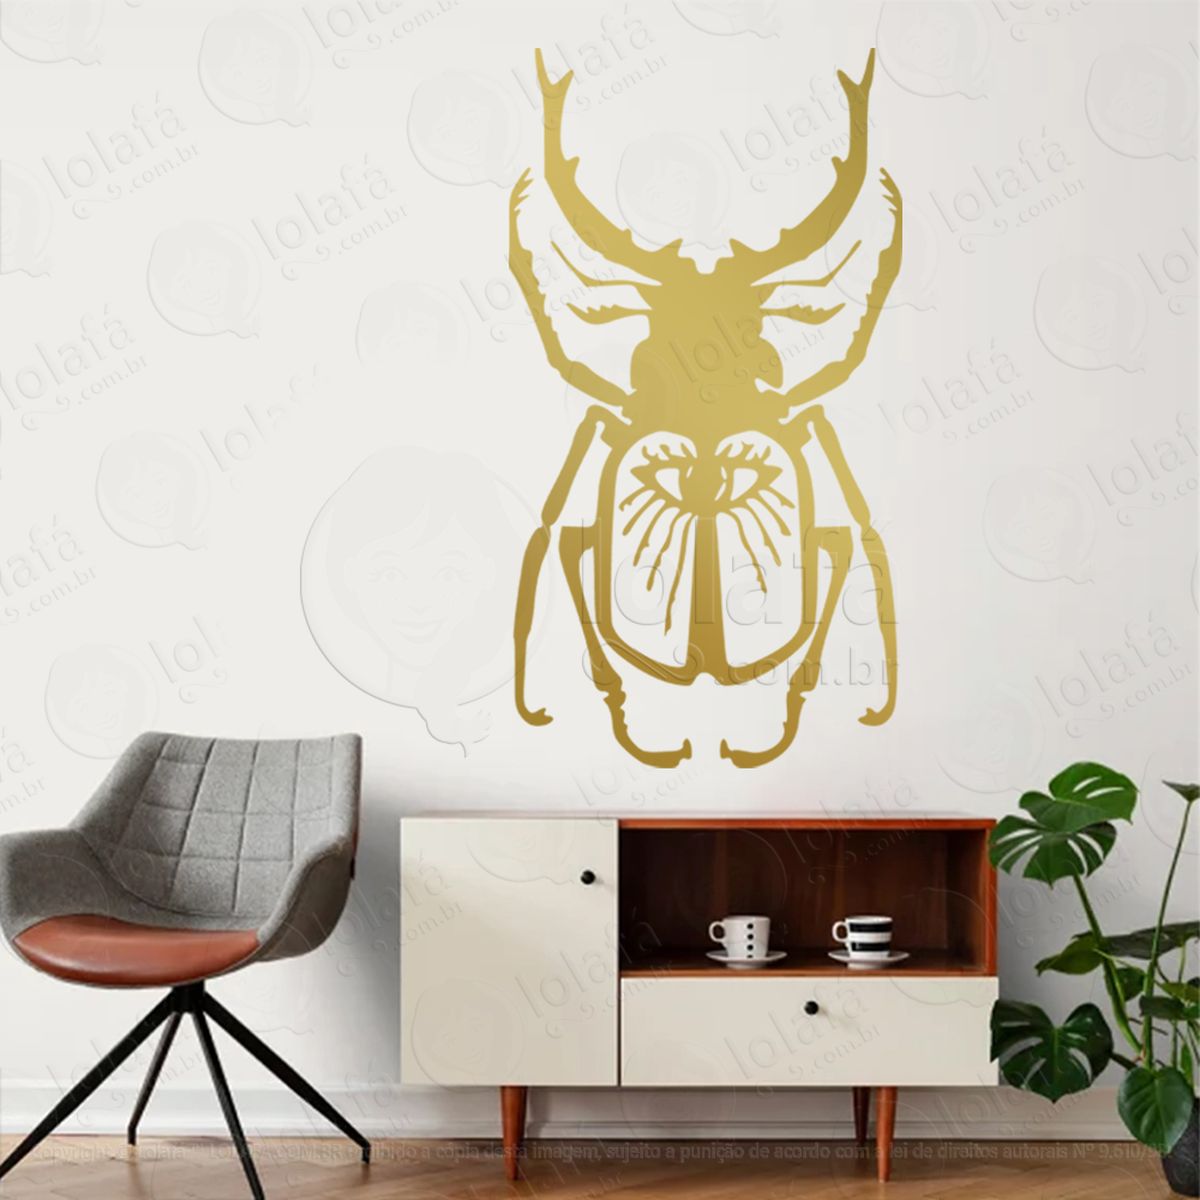 besouro beetle adesivo de parede decorativo para casa, sala, quarto, vidro e altar ocultista - mod:243